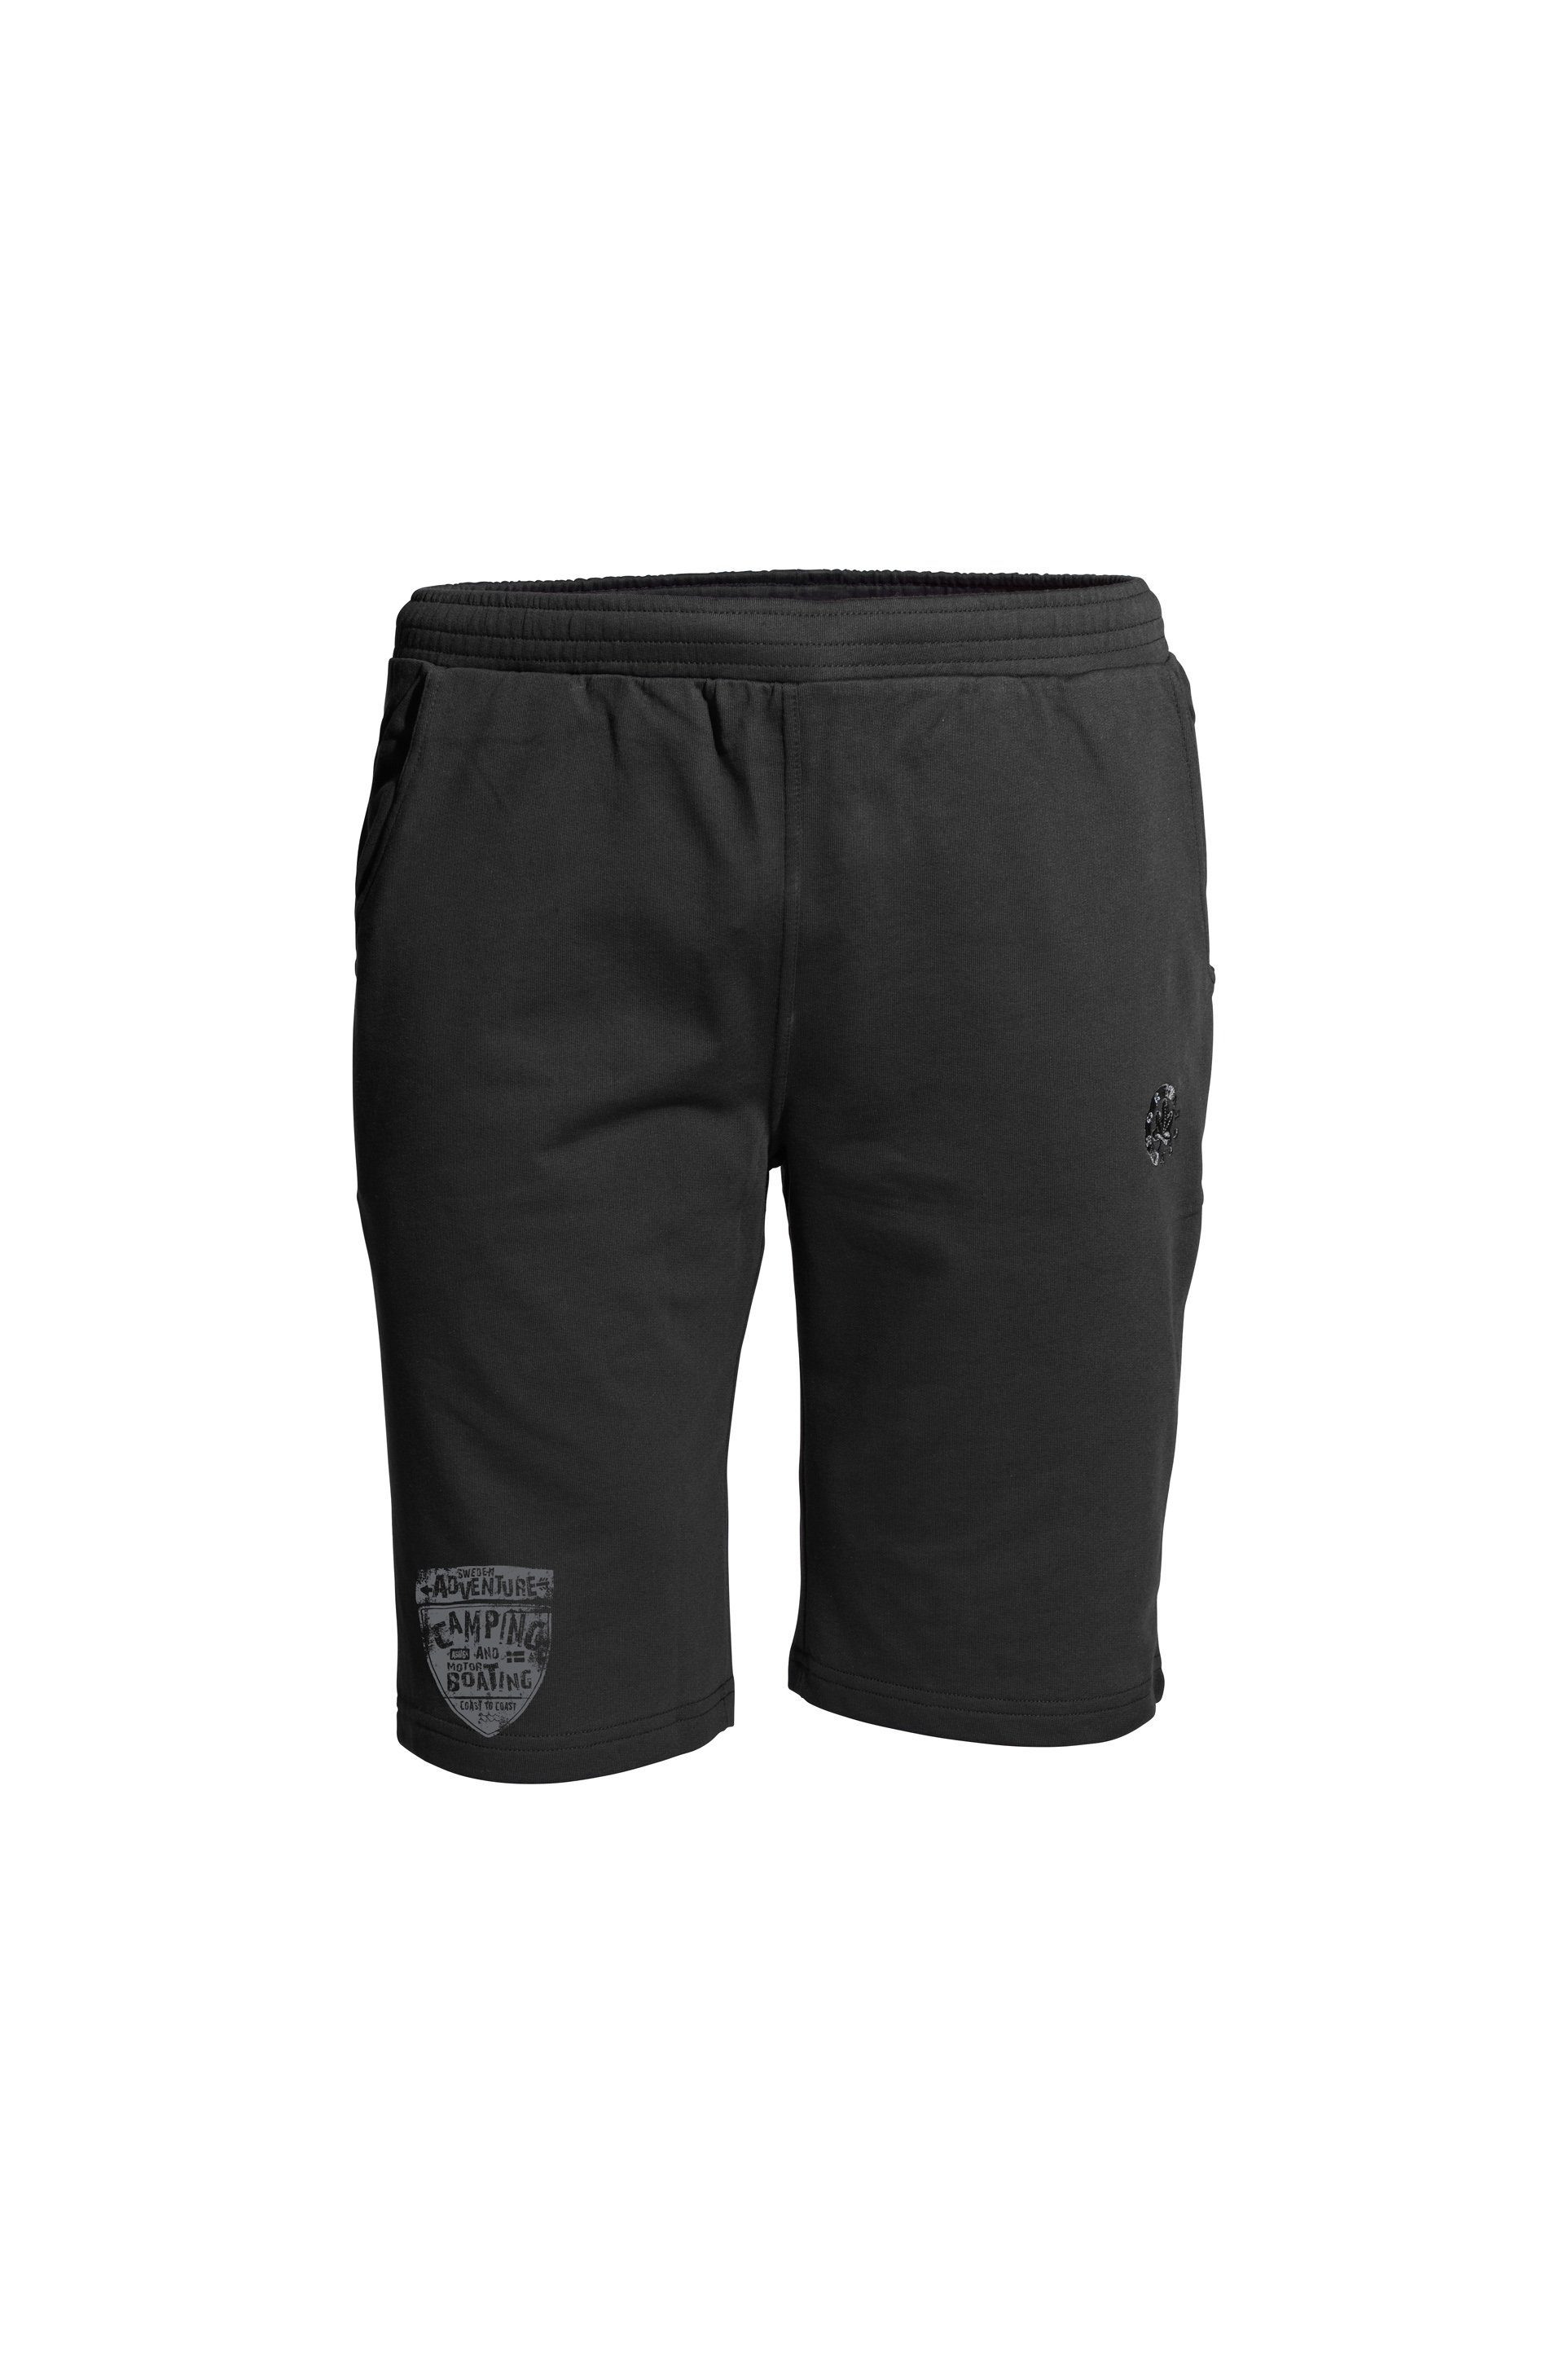 SPORTSWEAR sportlichem Shorts schwarz am CAMPING Print mit AHORN Bein